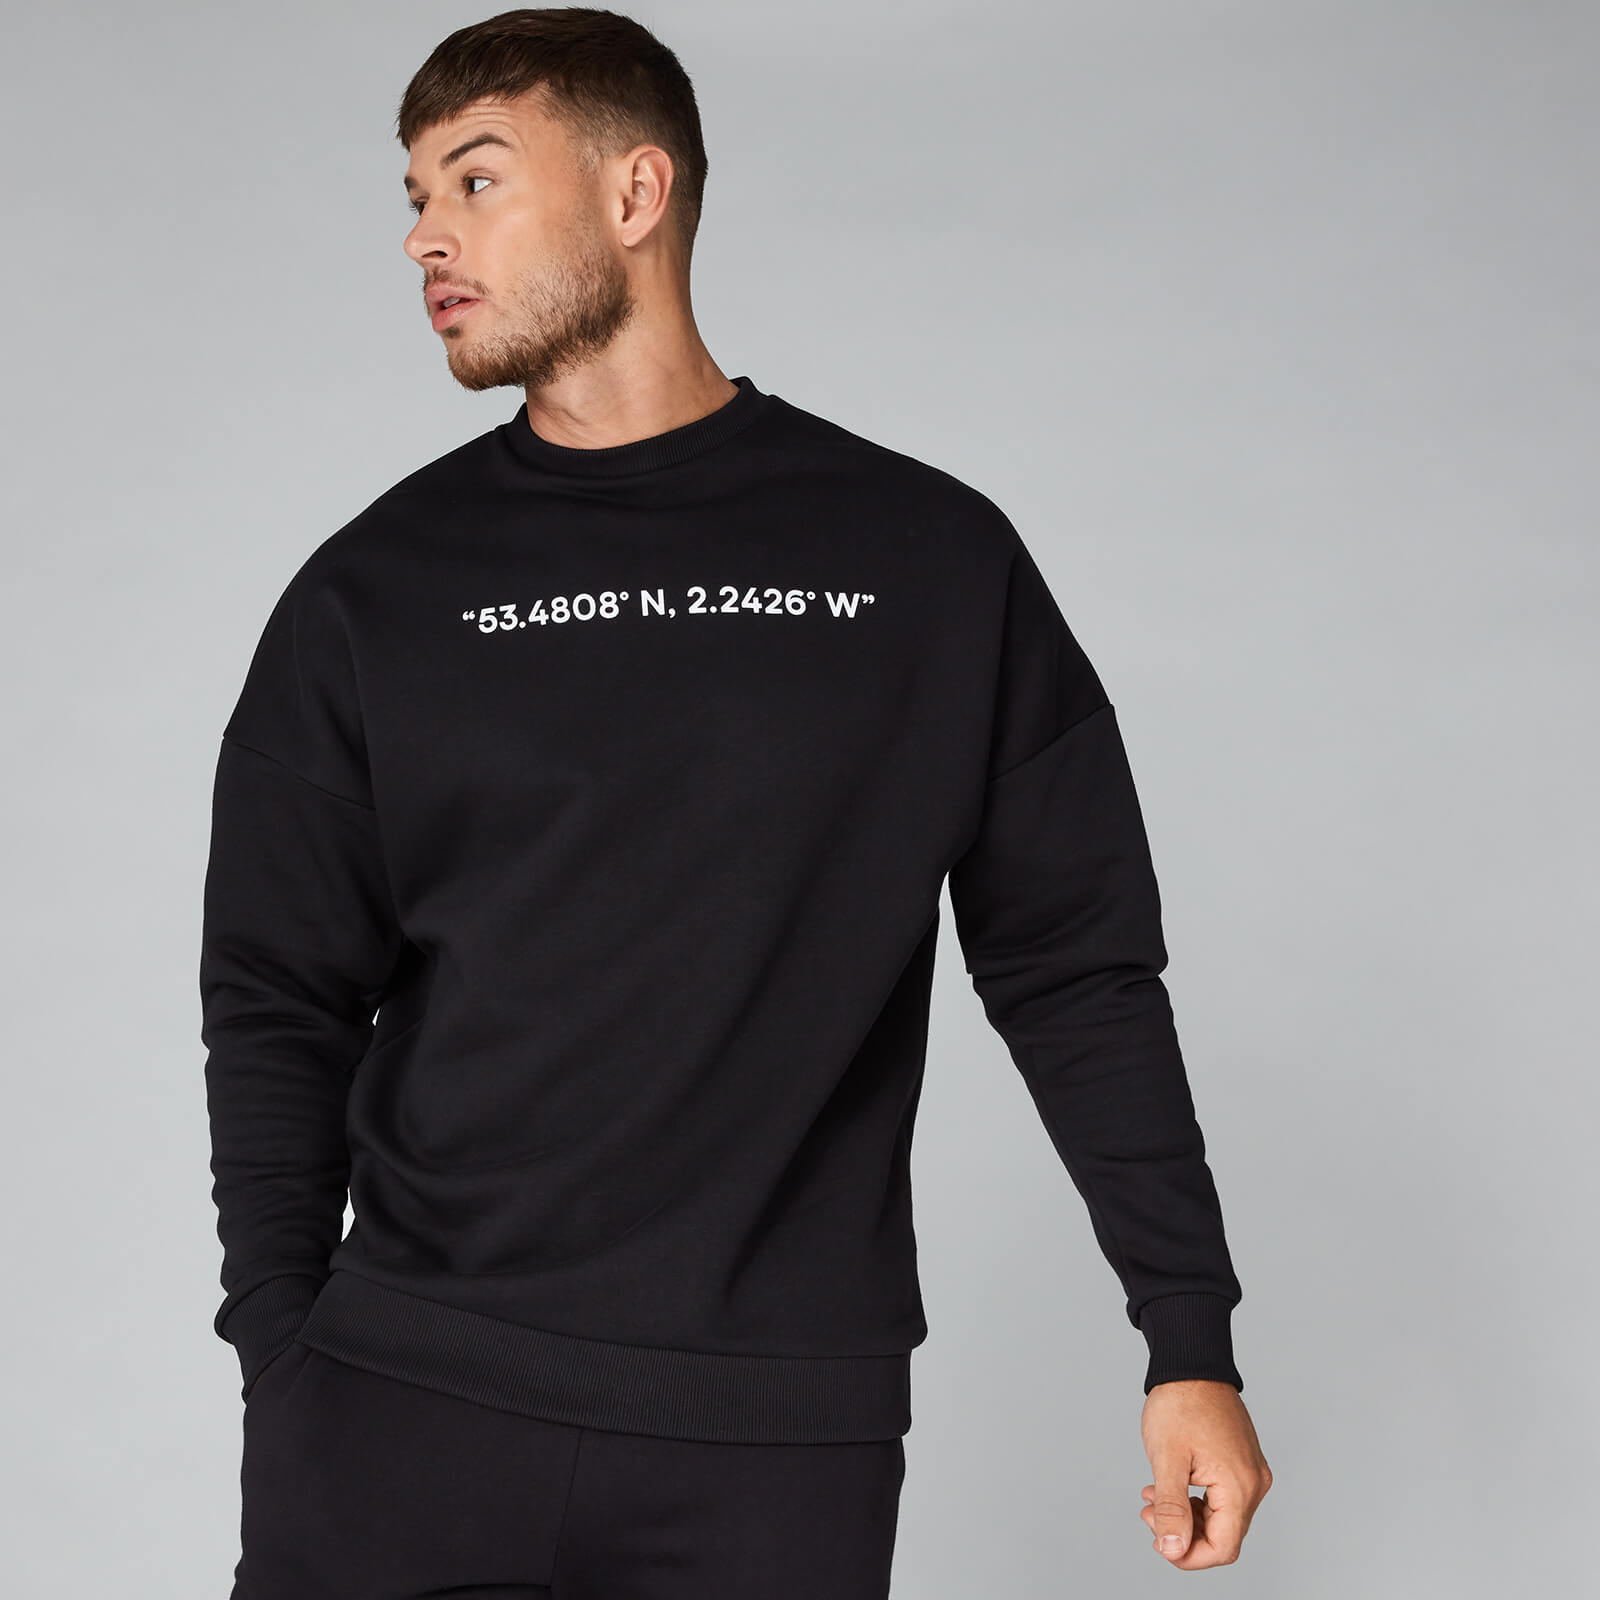 Coordinates Sweatshirt - Black - S